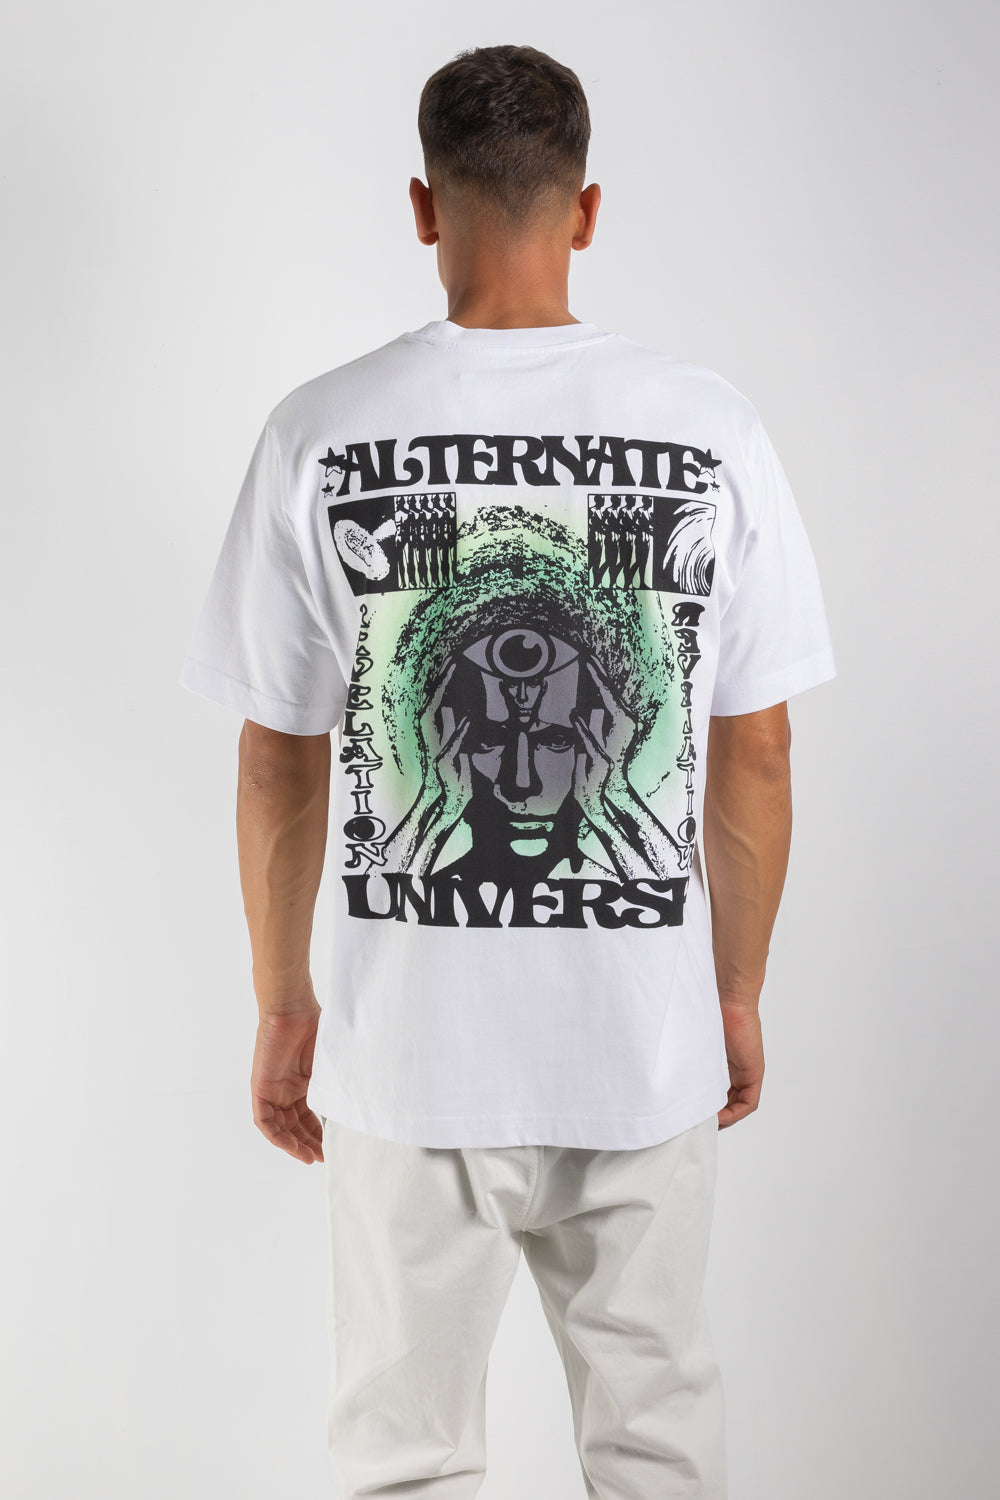 Mens T-shirt | Homework Alt Universe Tee | The Standard Store